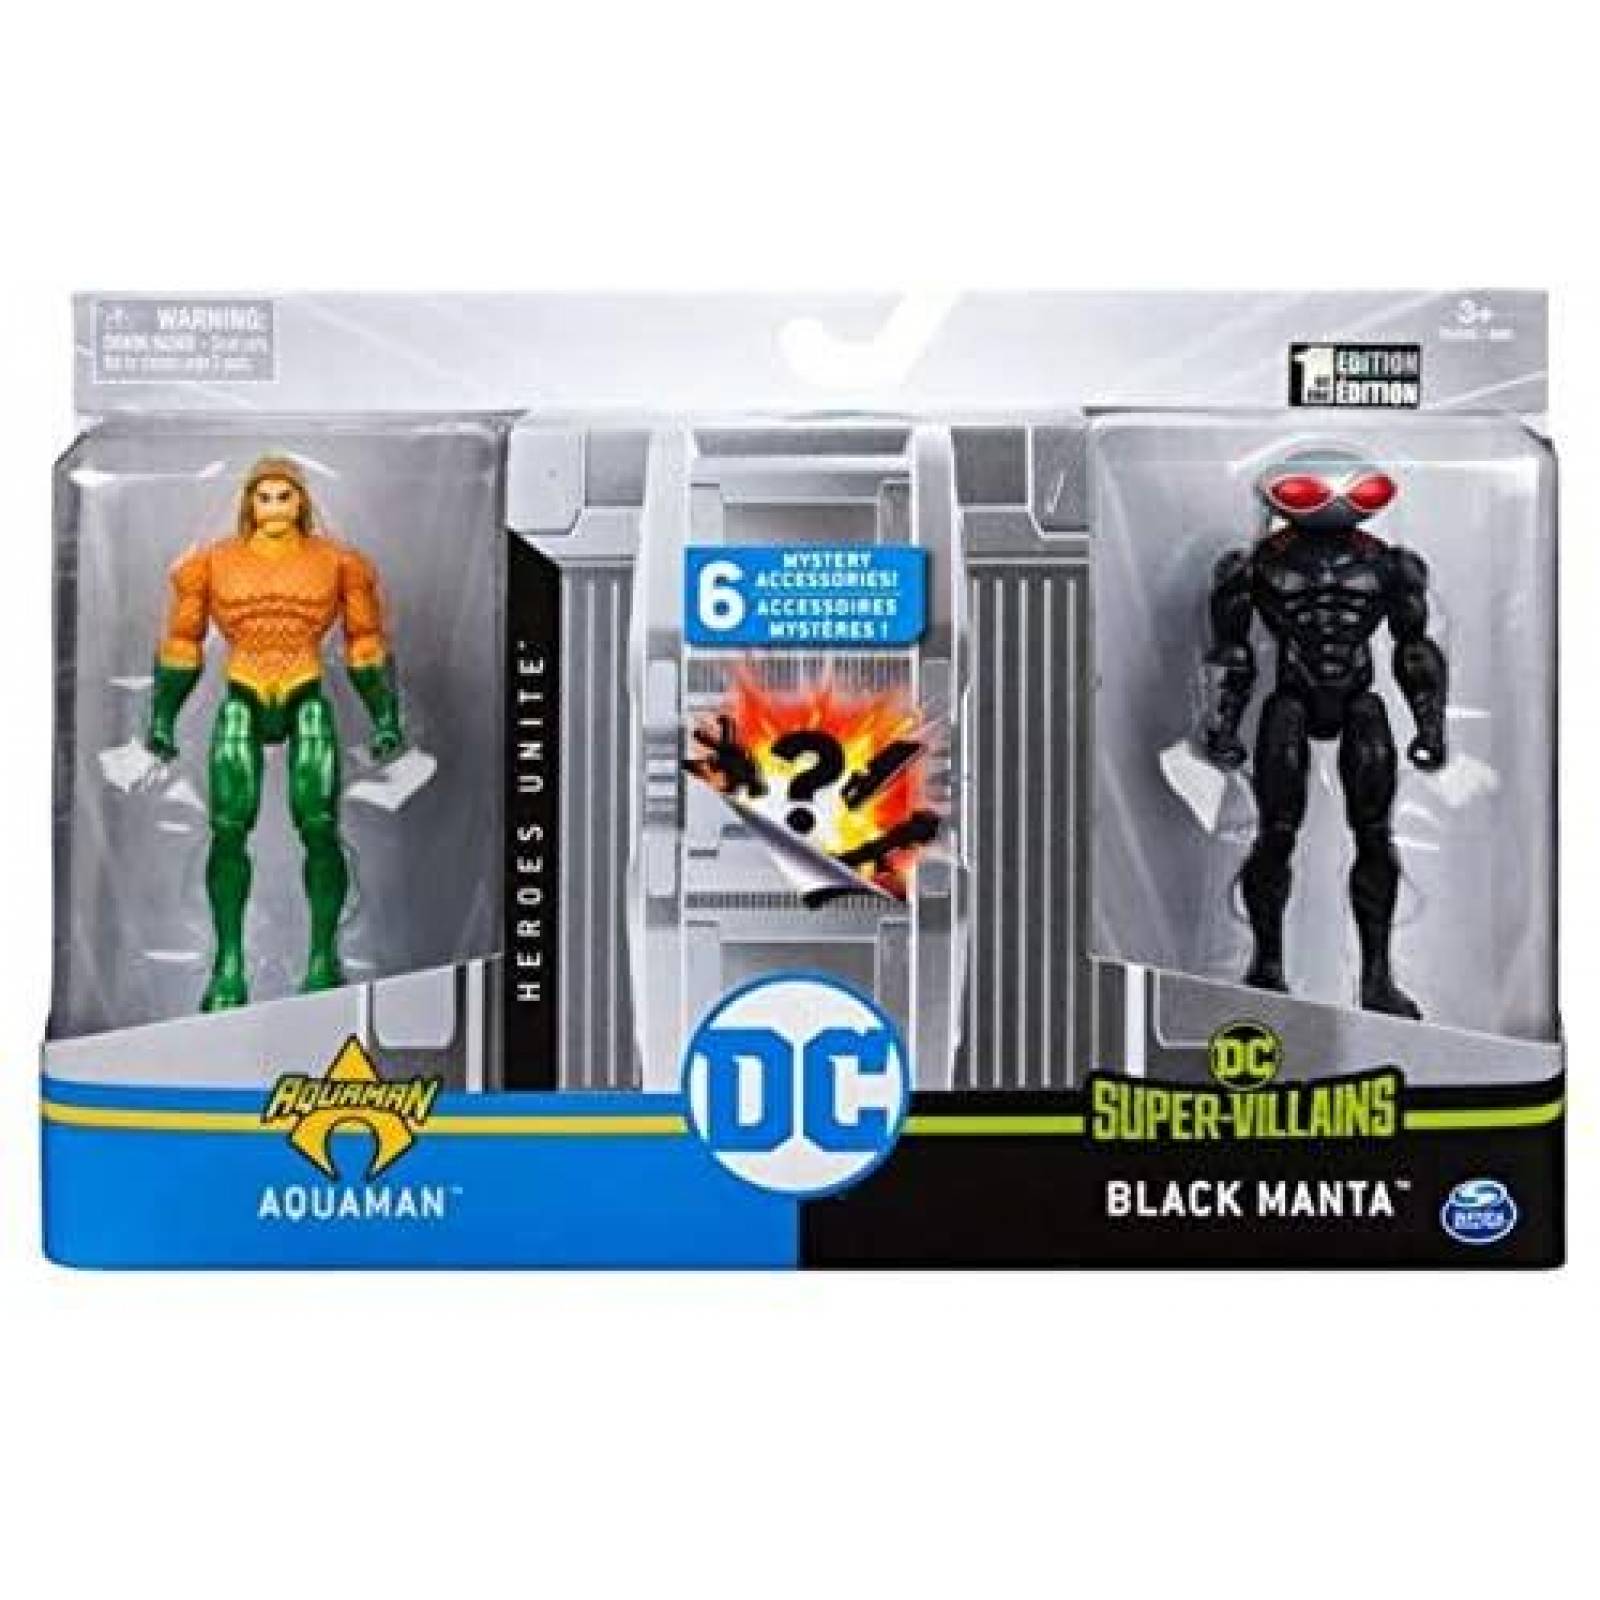 DC Heroes Unite. Aquaman VS Black Manta 